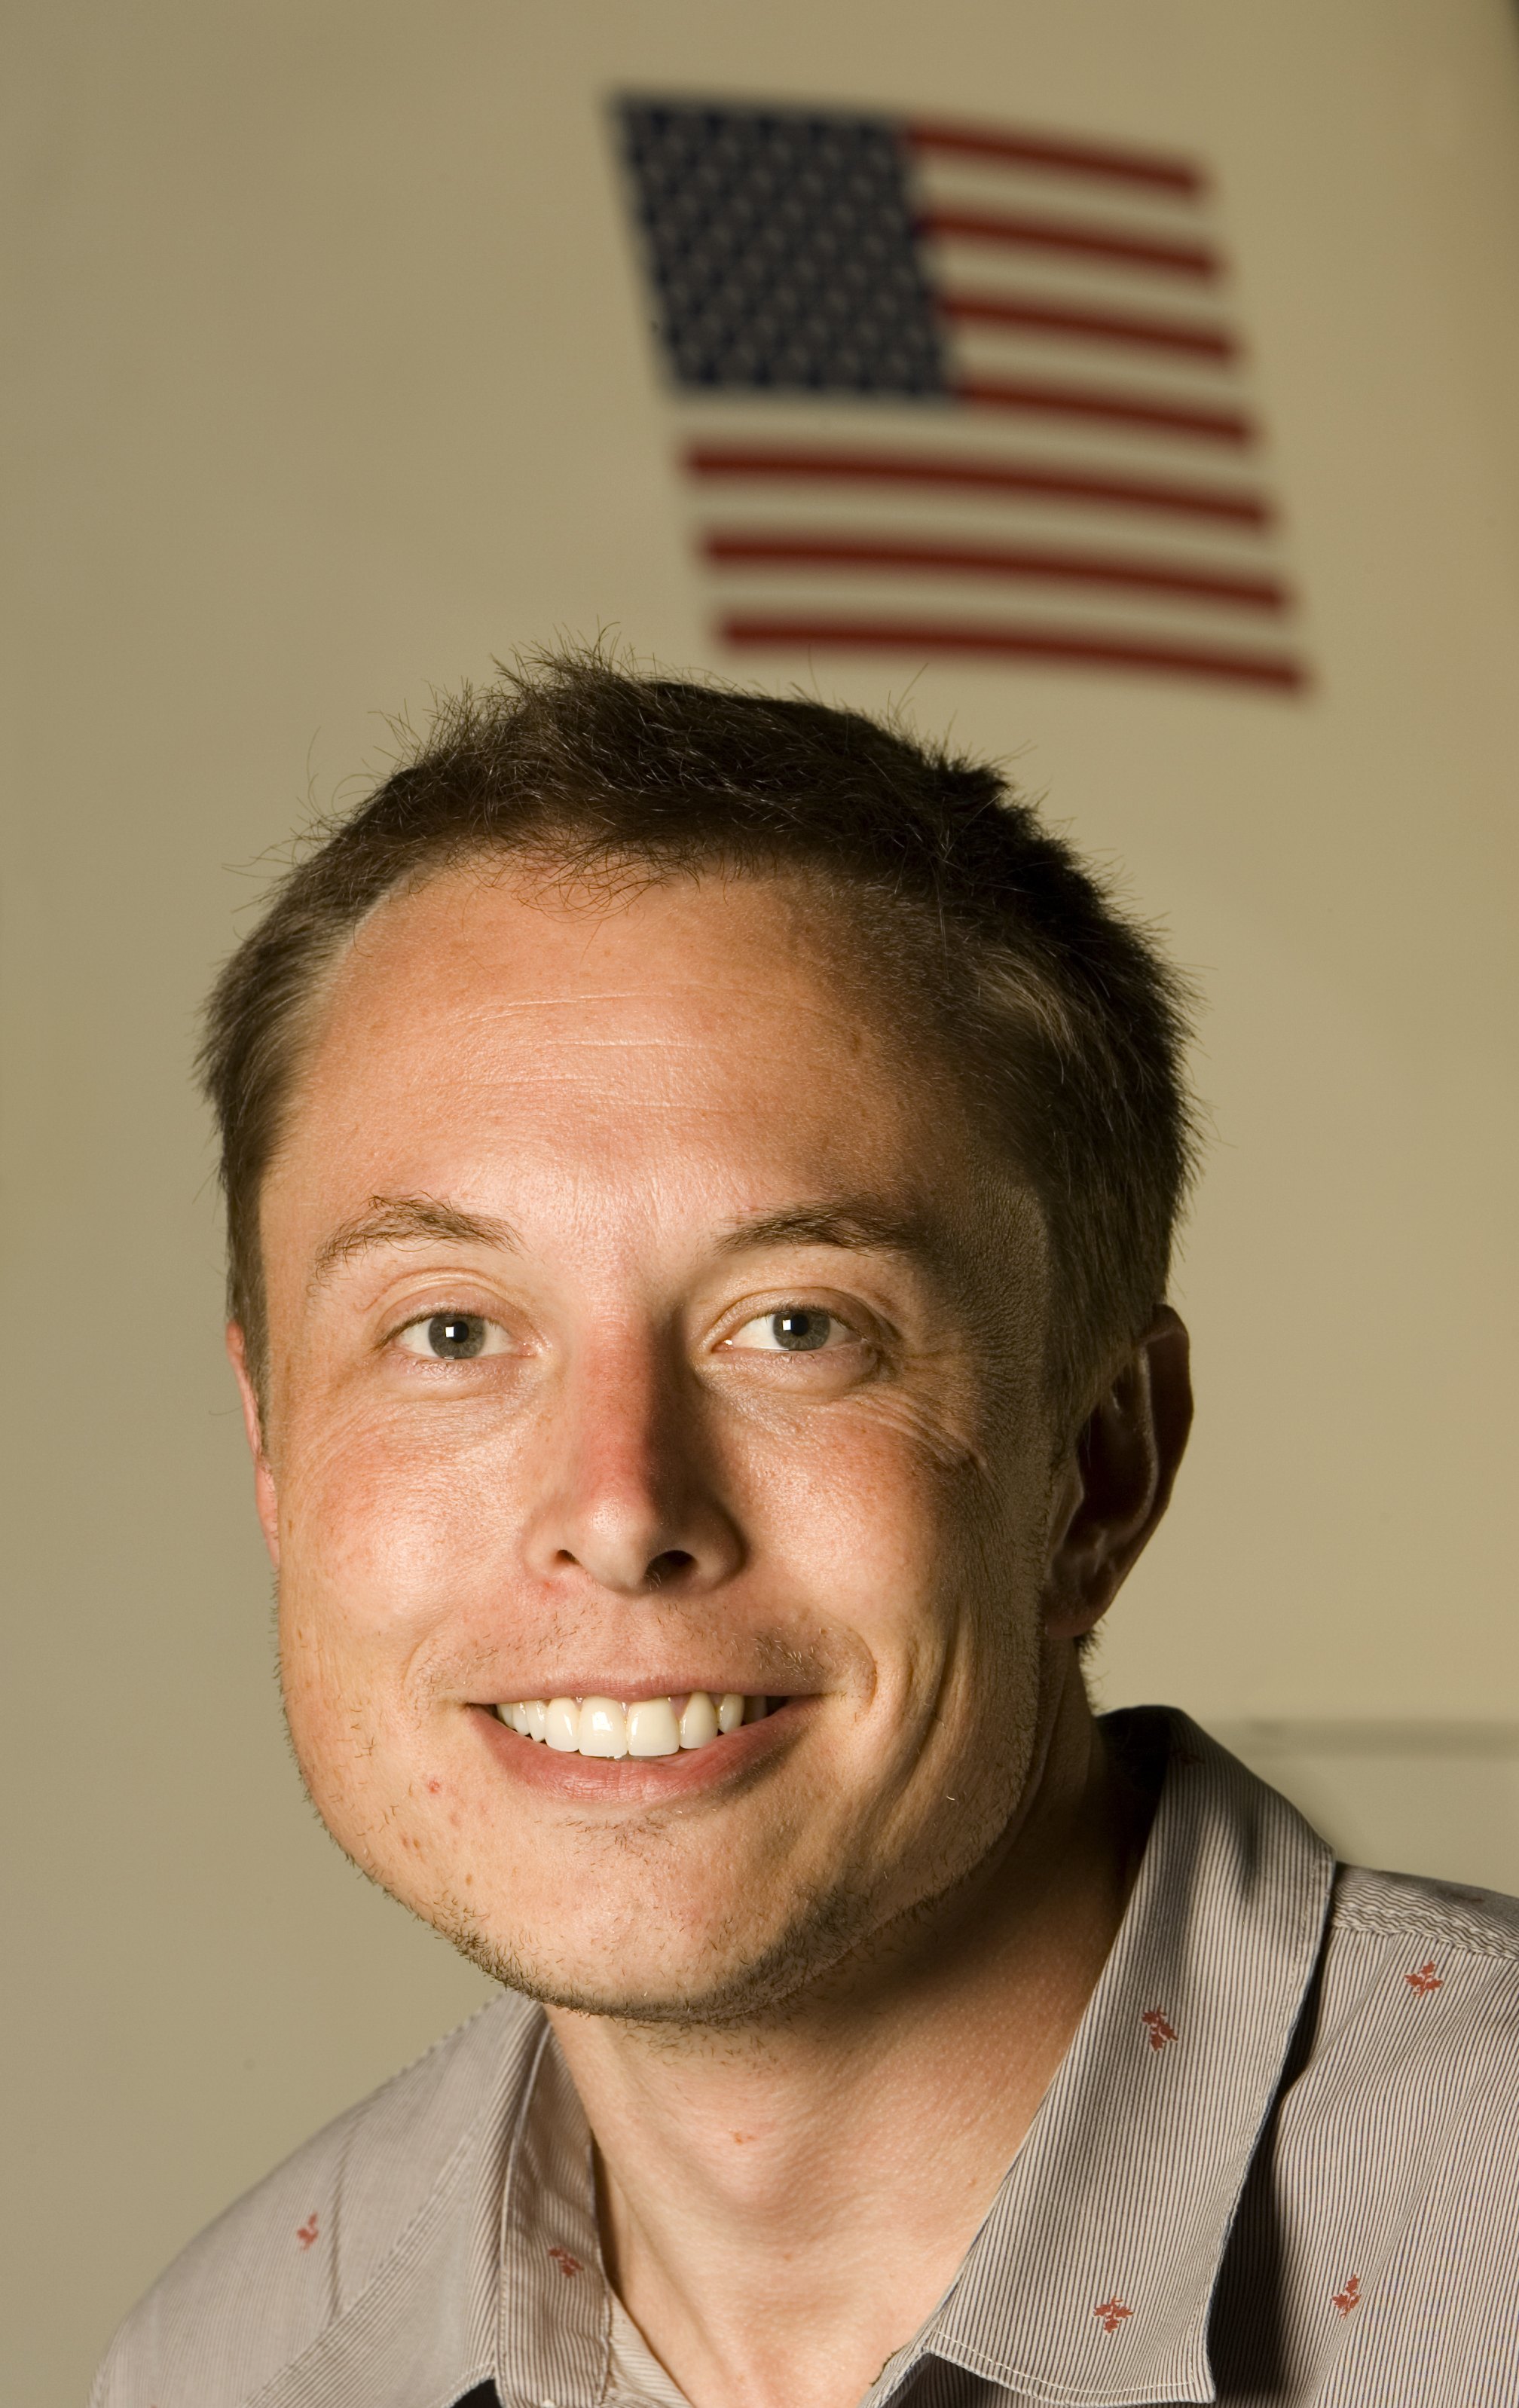 Un portrait d'Elon Musk le 25 juillet 2008, à Los Angeles, en Californie. | Source : Getty Images